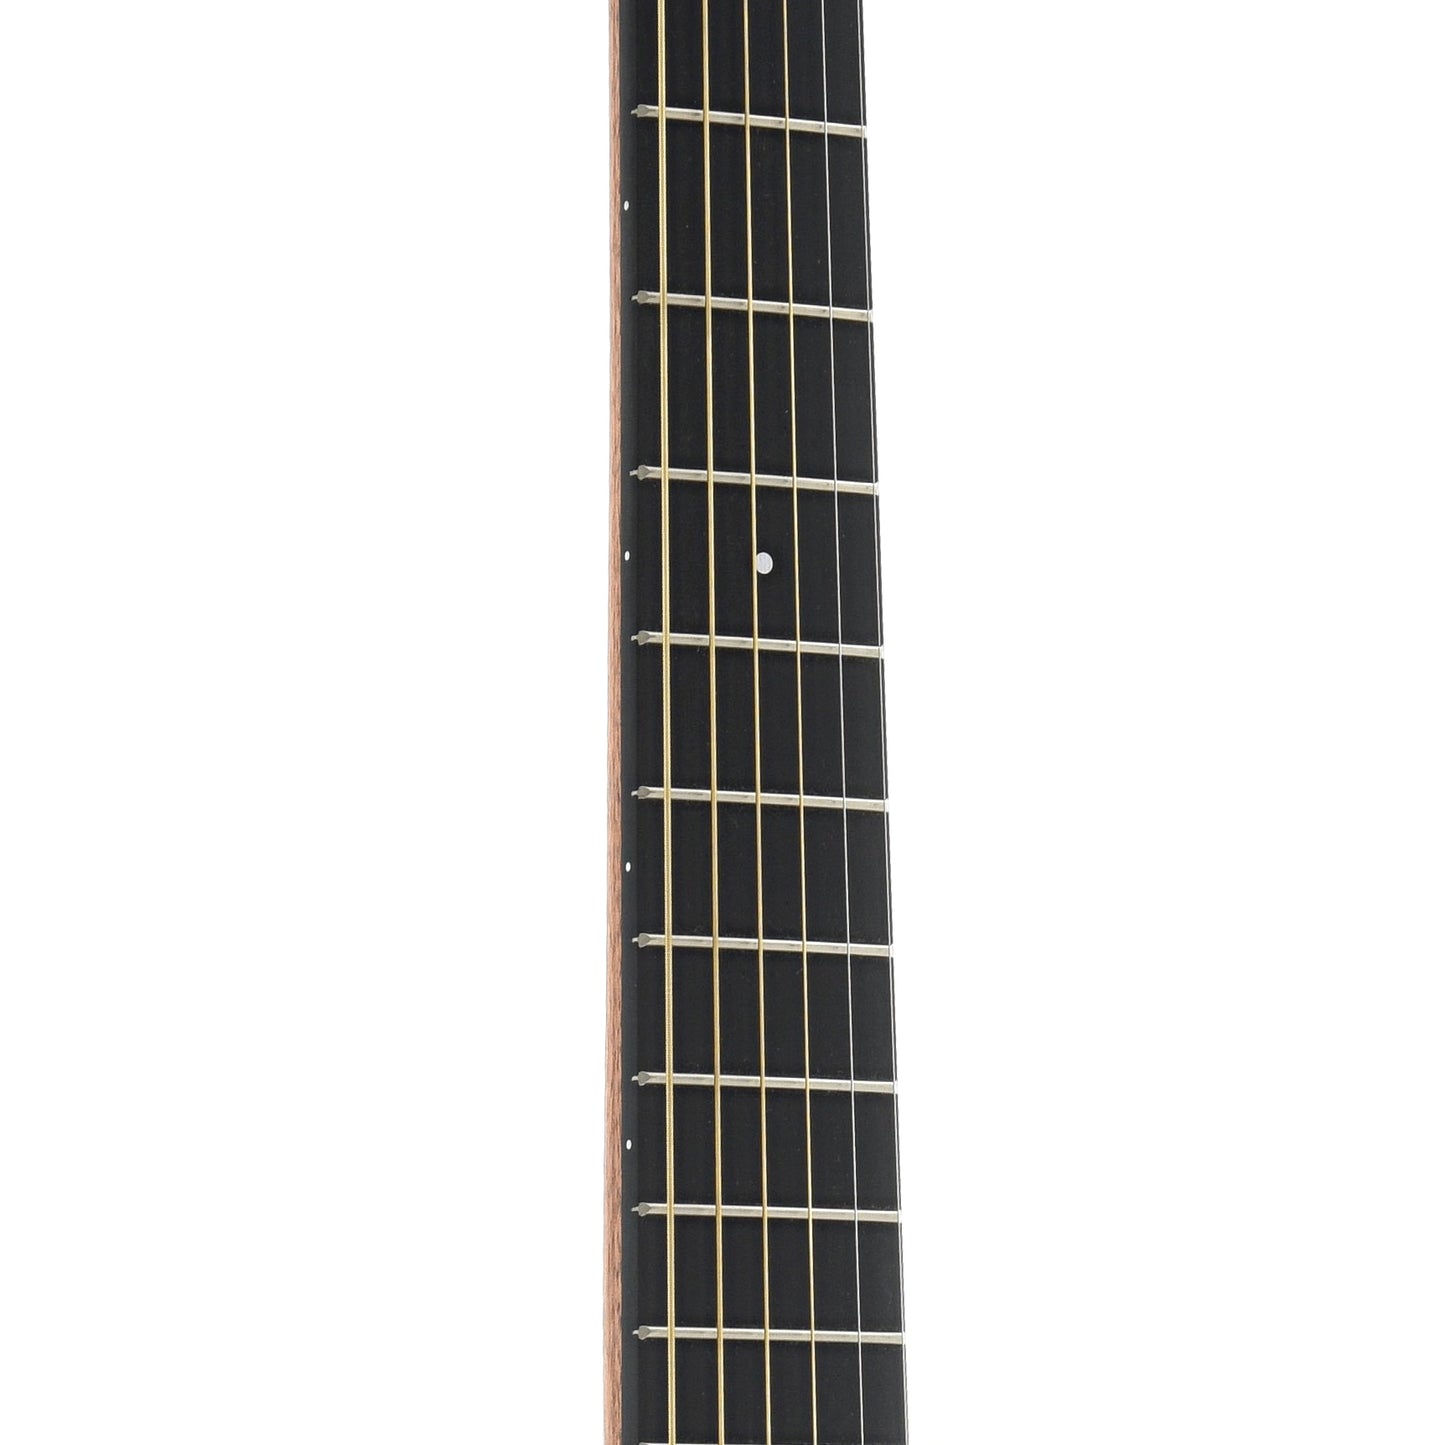 Fretboard of Martin Backpacker Steelstring Guitar